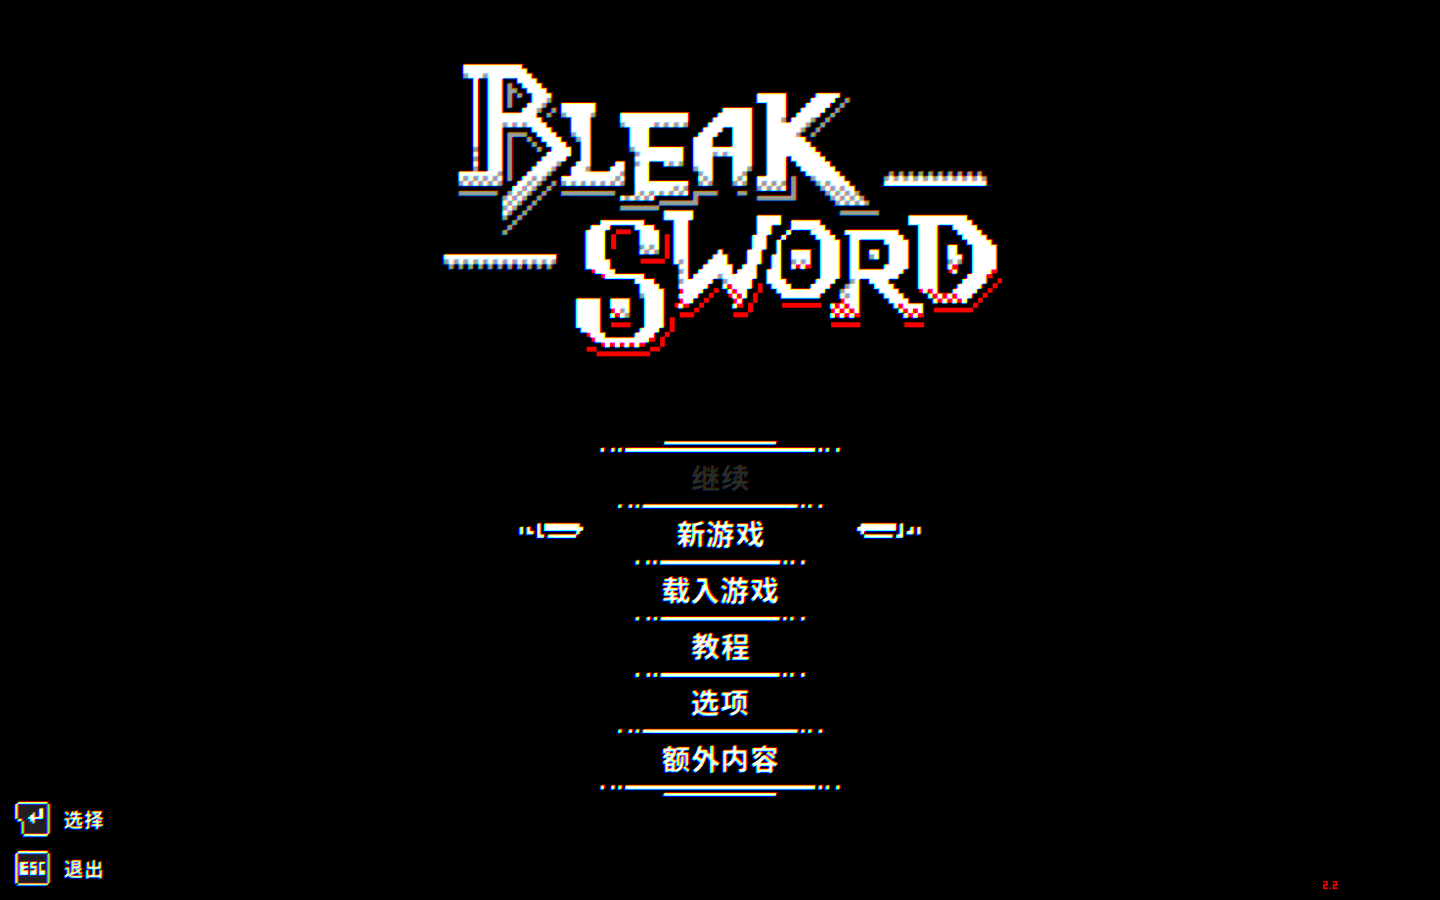 荒绝之剑 for Mac v4.0 Bleak Sword 中文原生版 苹果电脑